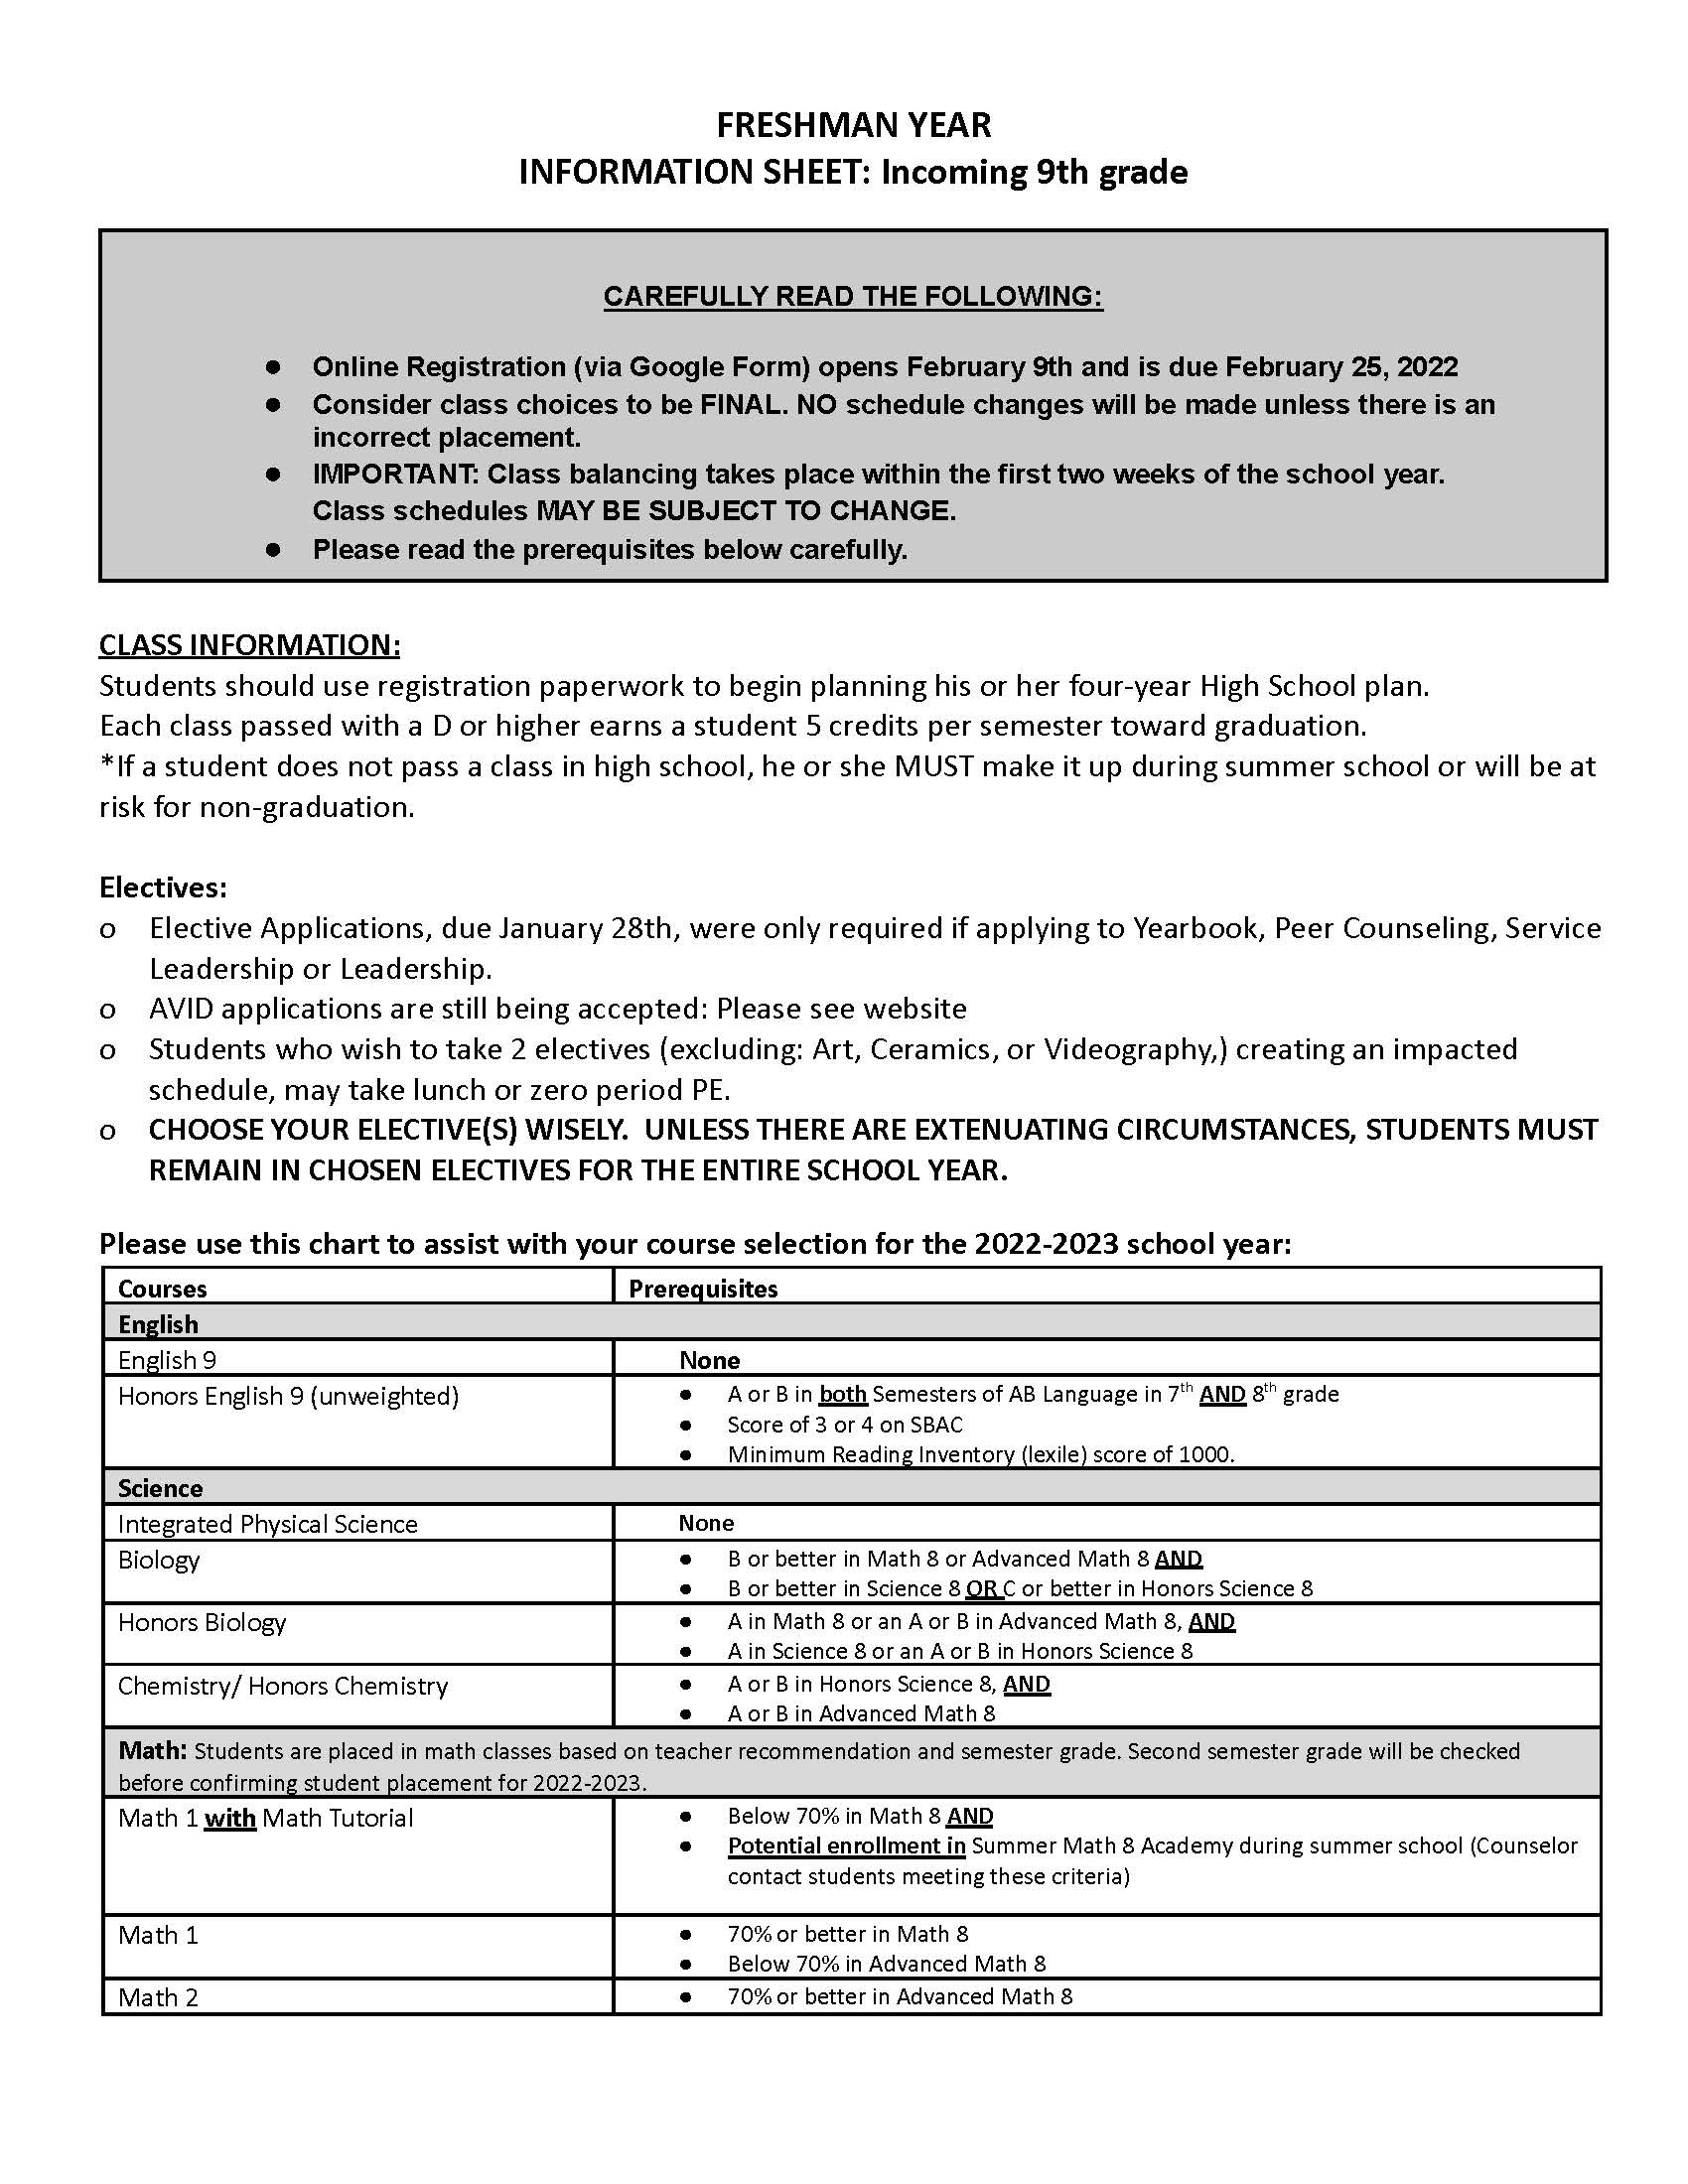 9th Grade information sheet 